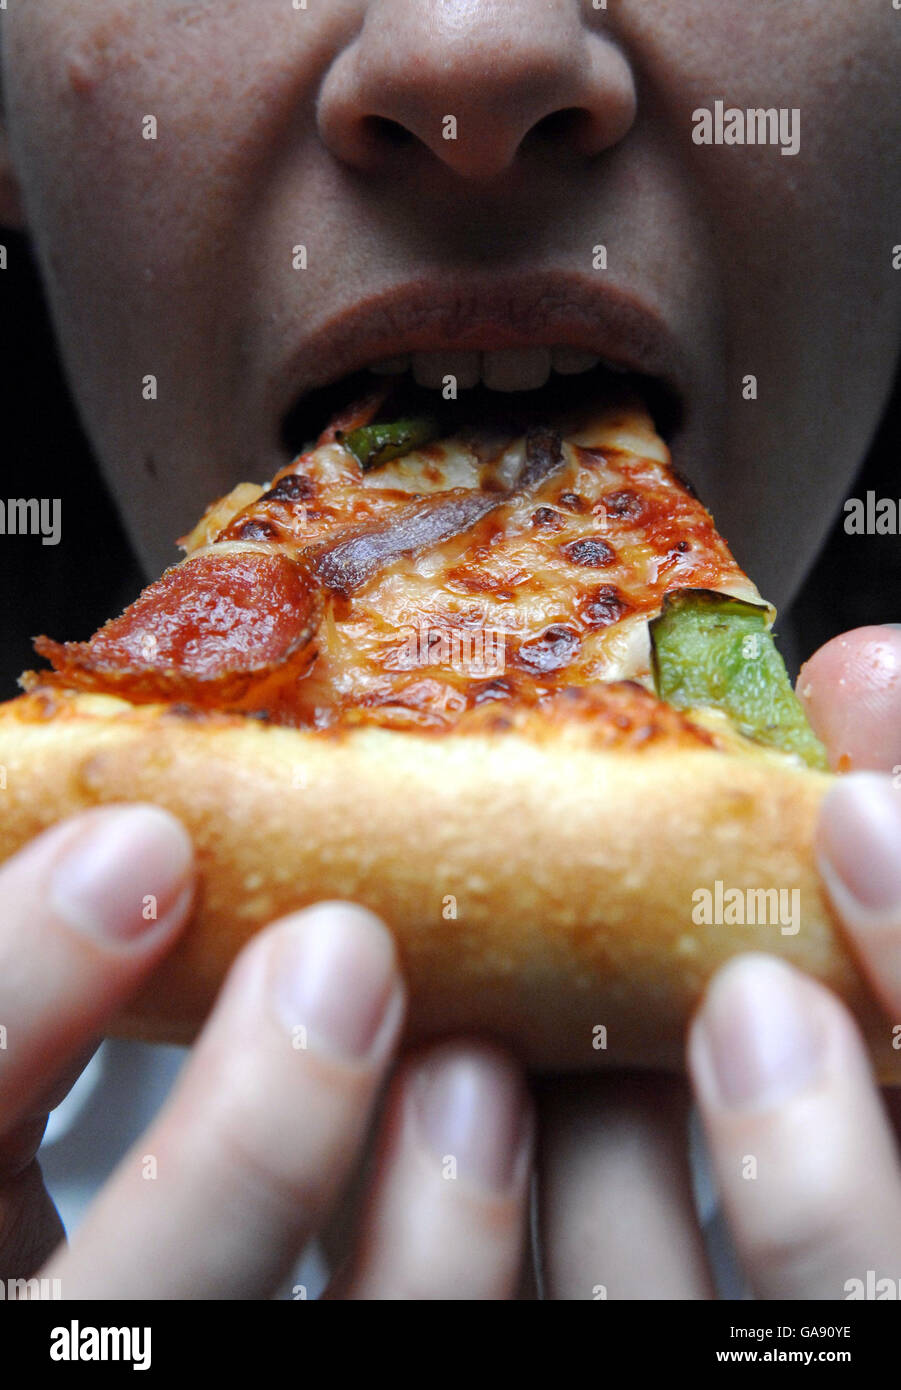 Photo générique d'une personne mangeant une pizza de Pizza Hut Photo Stock  - Alamy